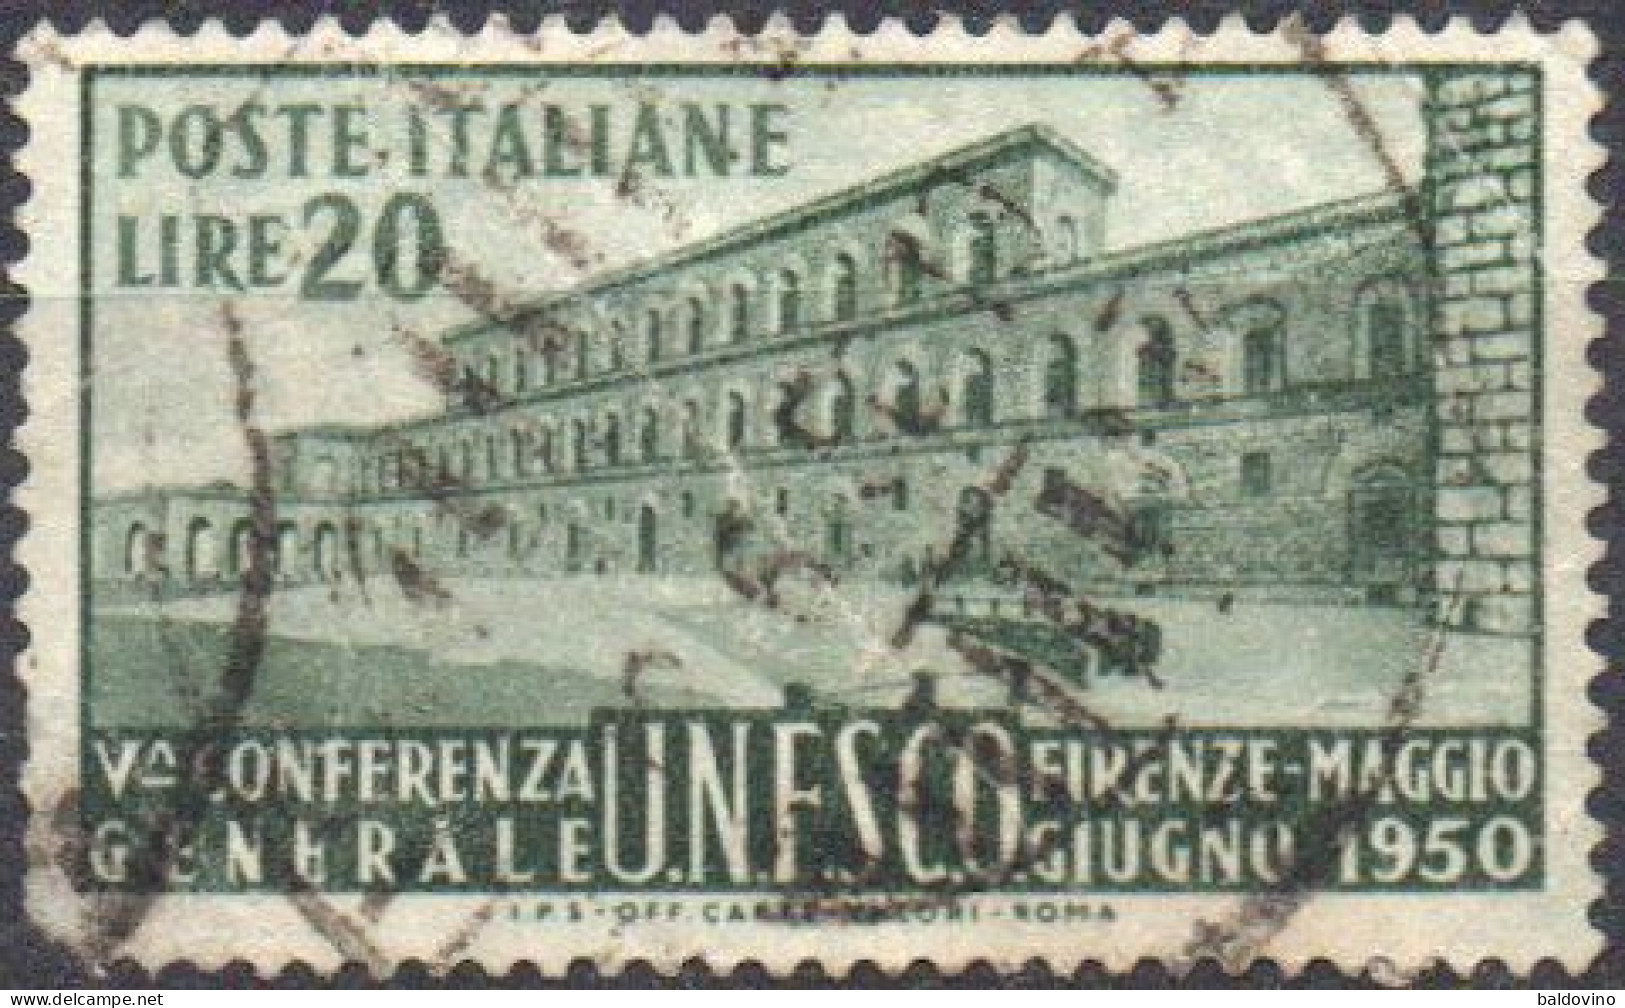 Italia 1949/50 13 valori (vedi descrizione)